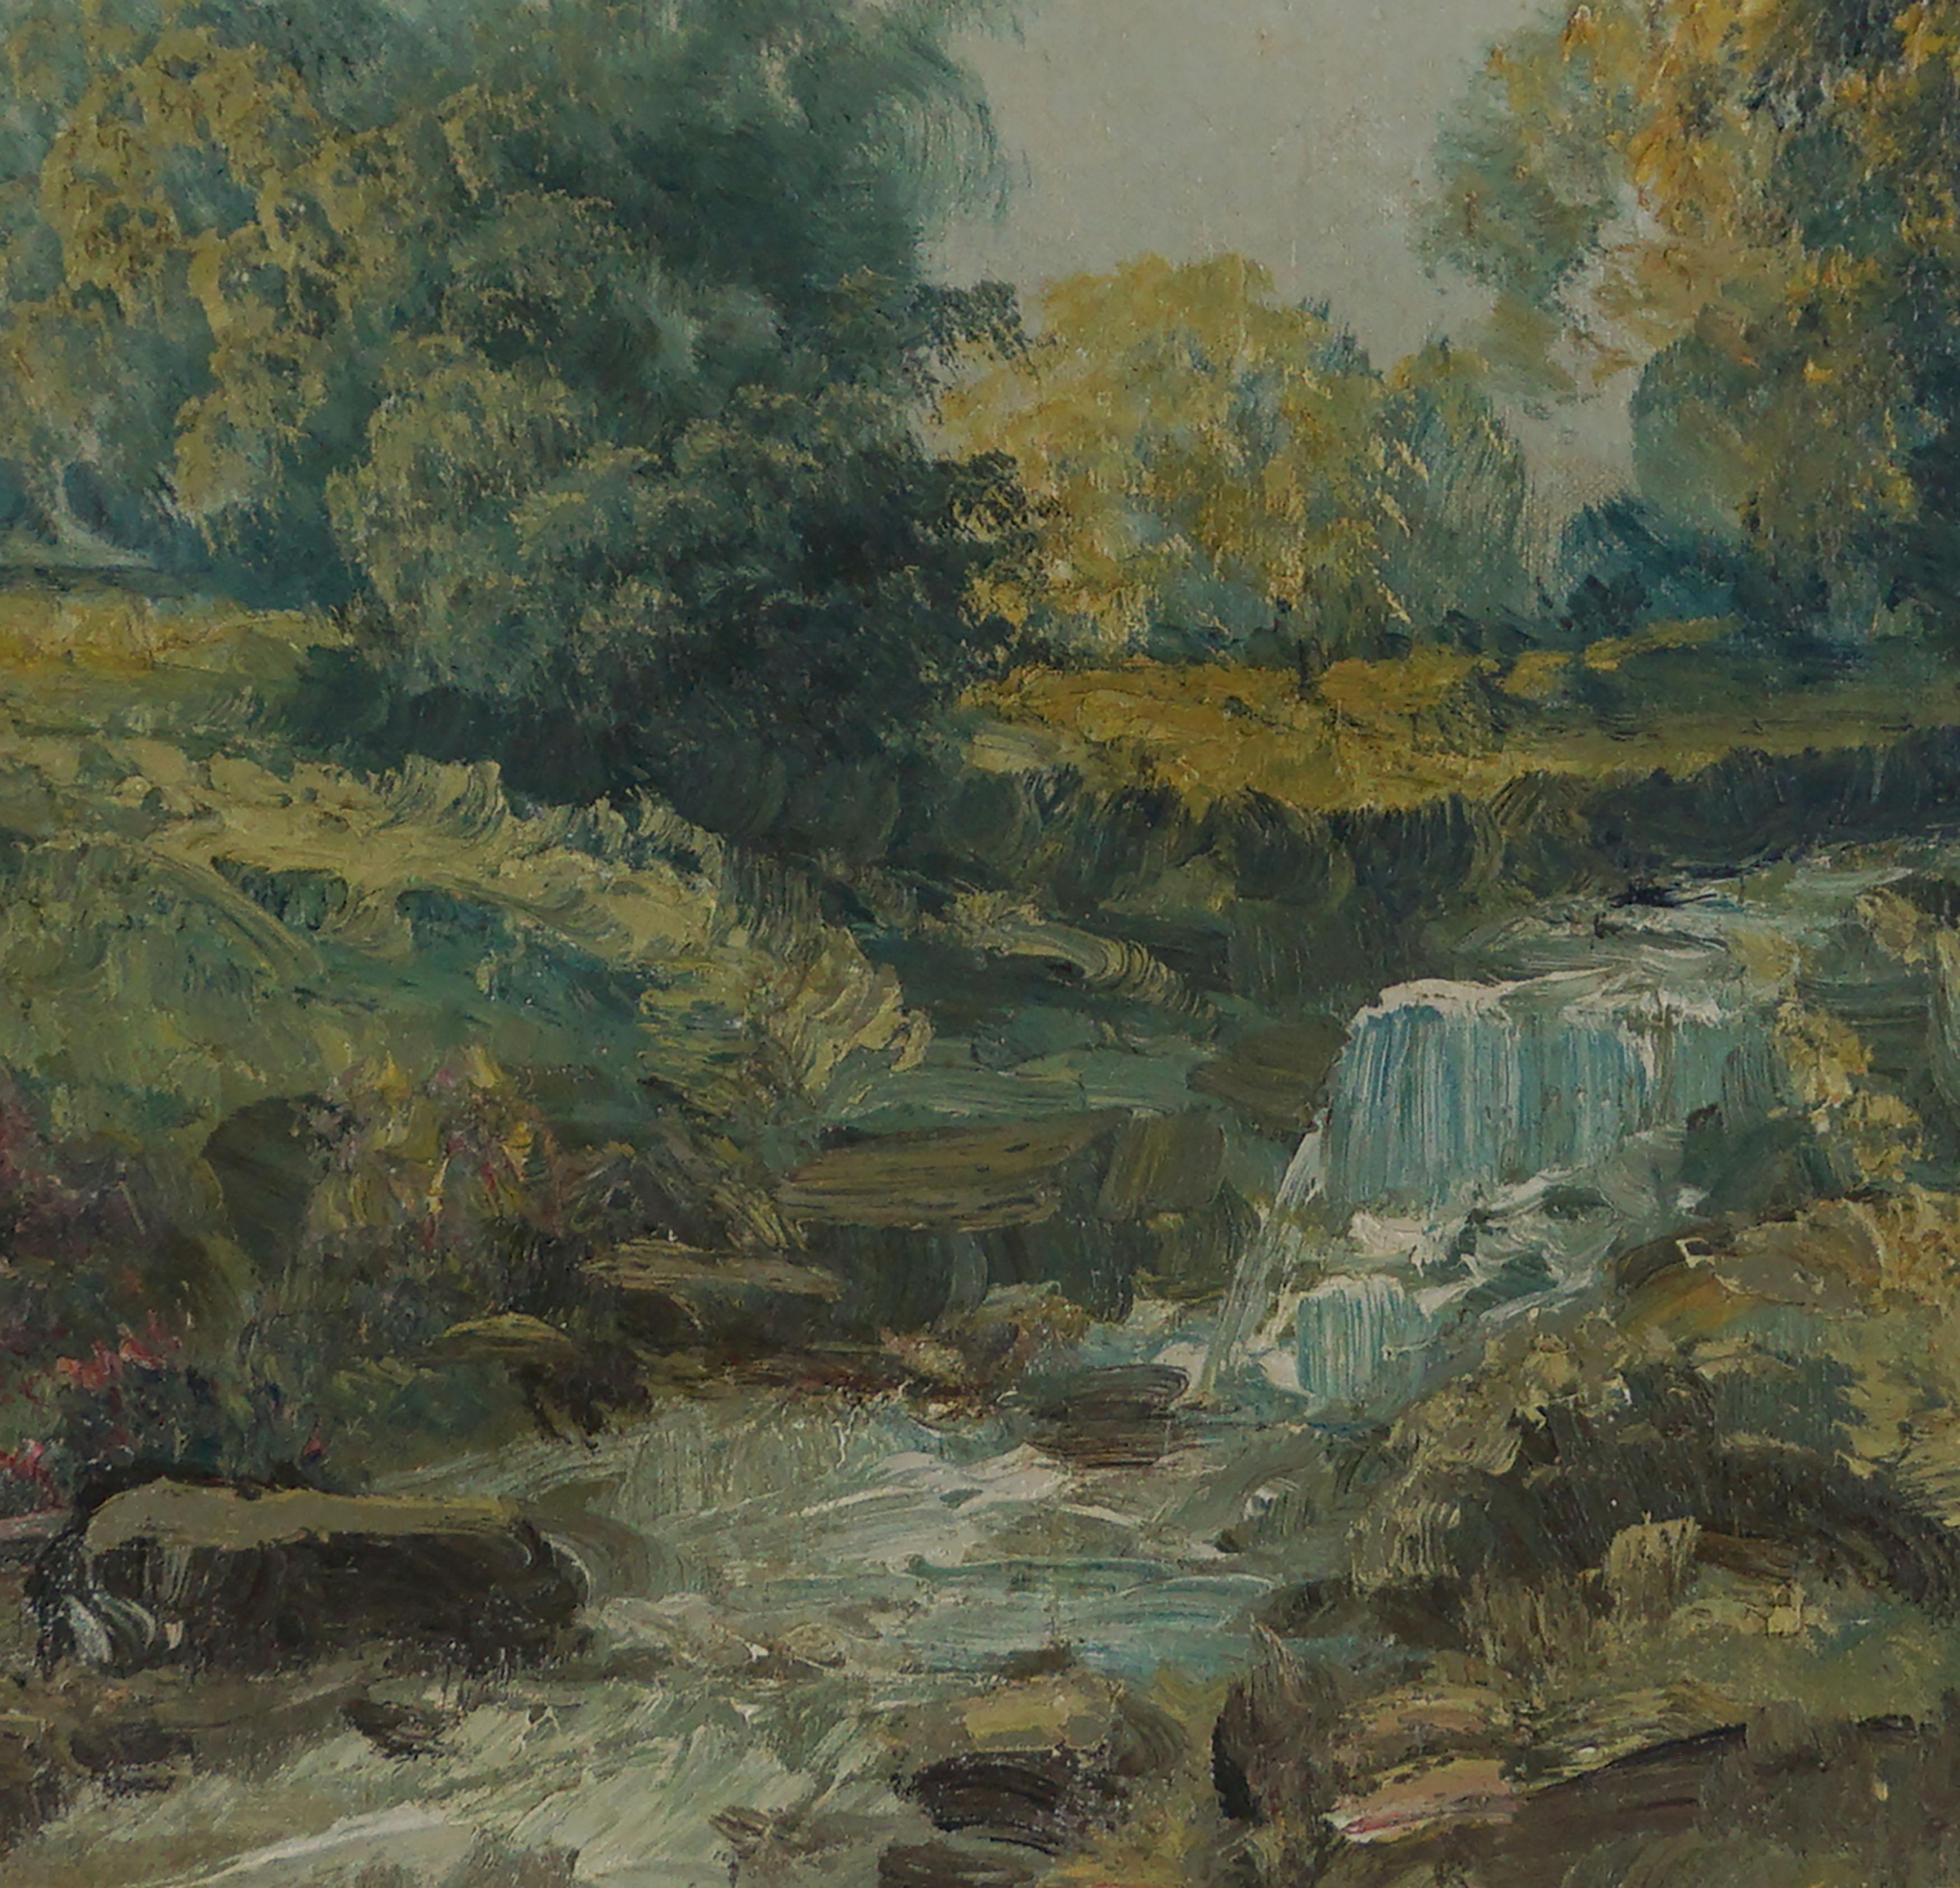 

Schöne impressionistische Landschaft des Shongum Lake, New Jersey countryside in Spring mit Stream und Blüten von Rudolph J. Eicher (1884 - 1958), CIRCA 1940s. Das leuchtende Laub des Frühlings und das Plätschern des Baches bilden die friedliche